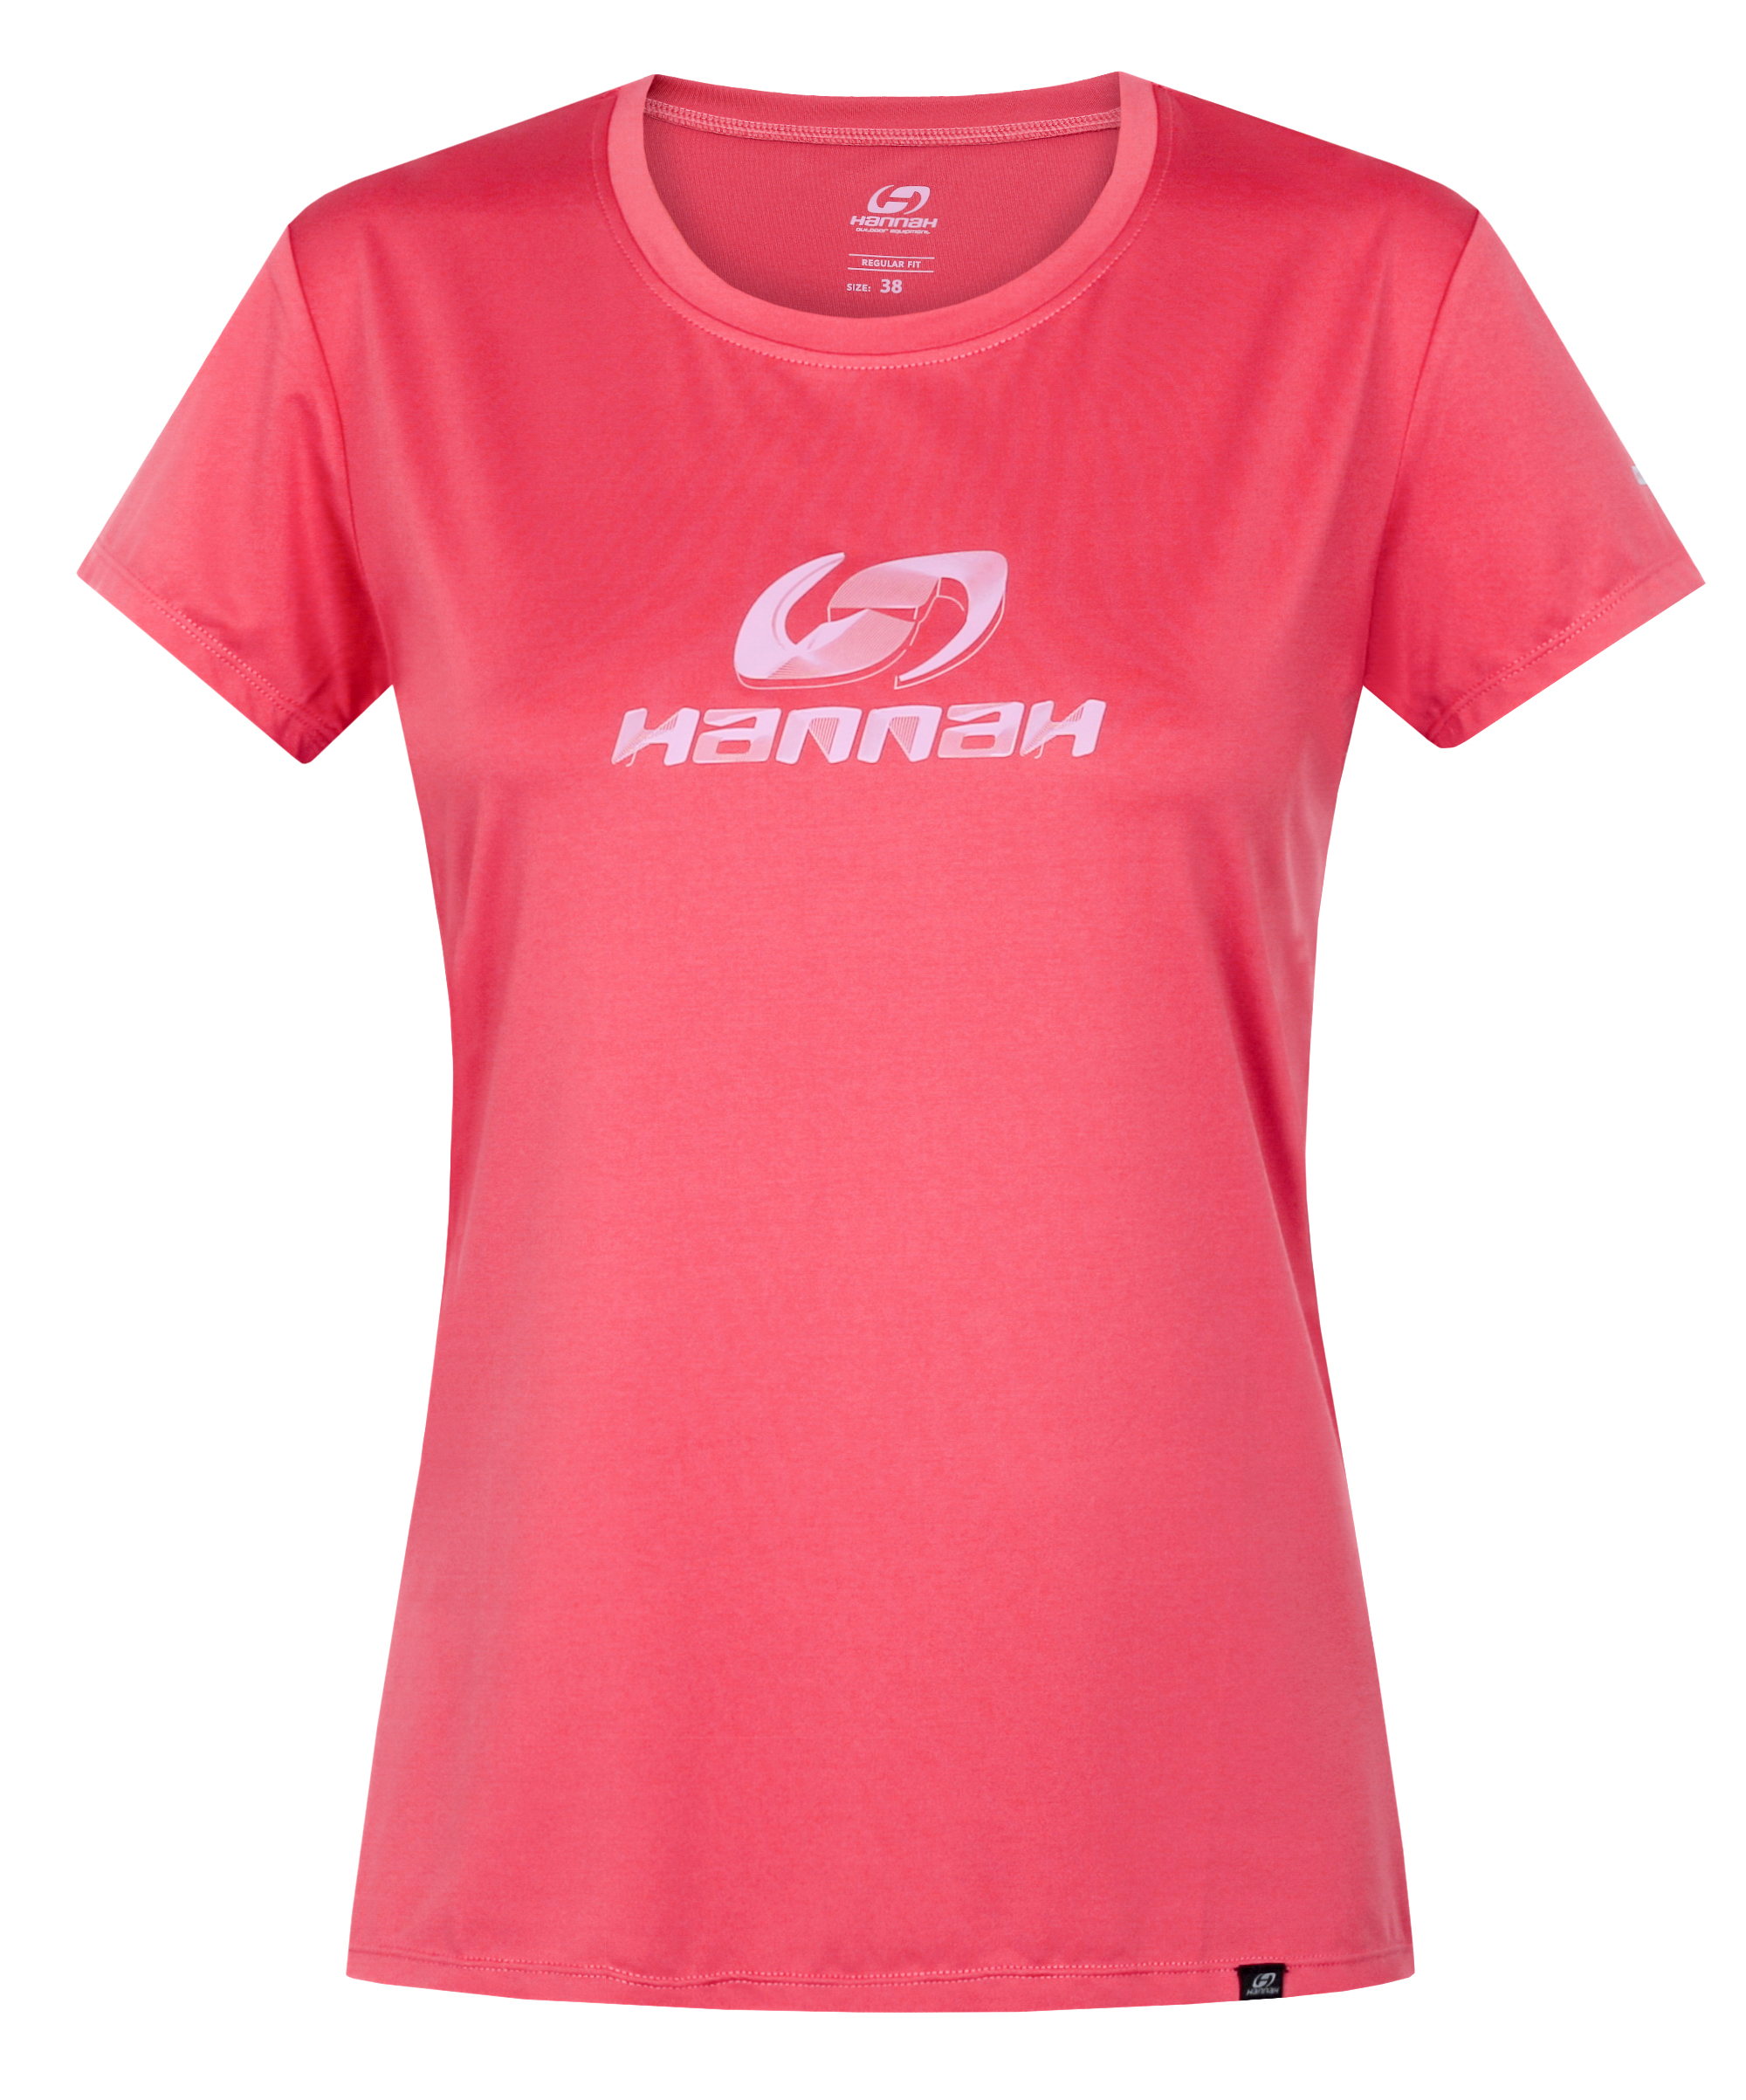 Hannah SAFFI II holly berry Velikost: 36 dámské tričko s krátkým rukávem